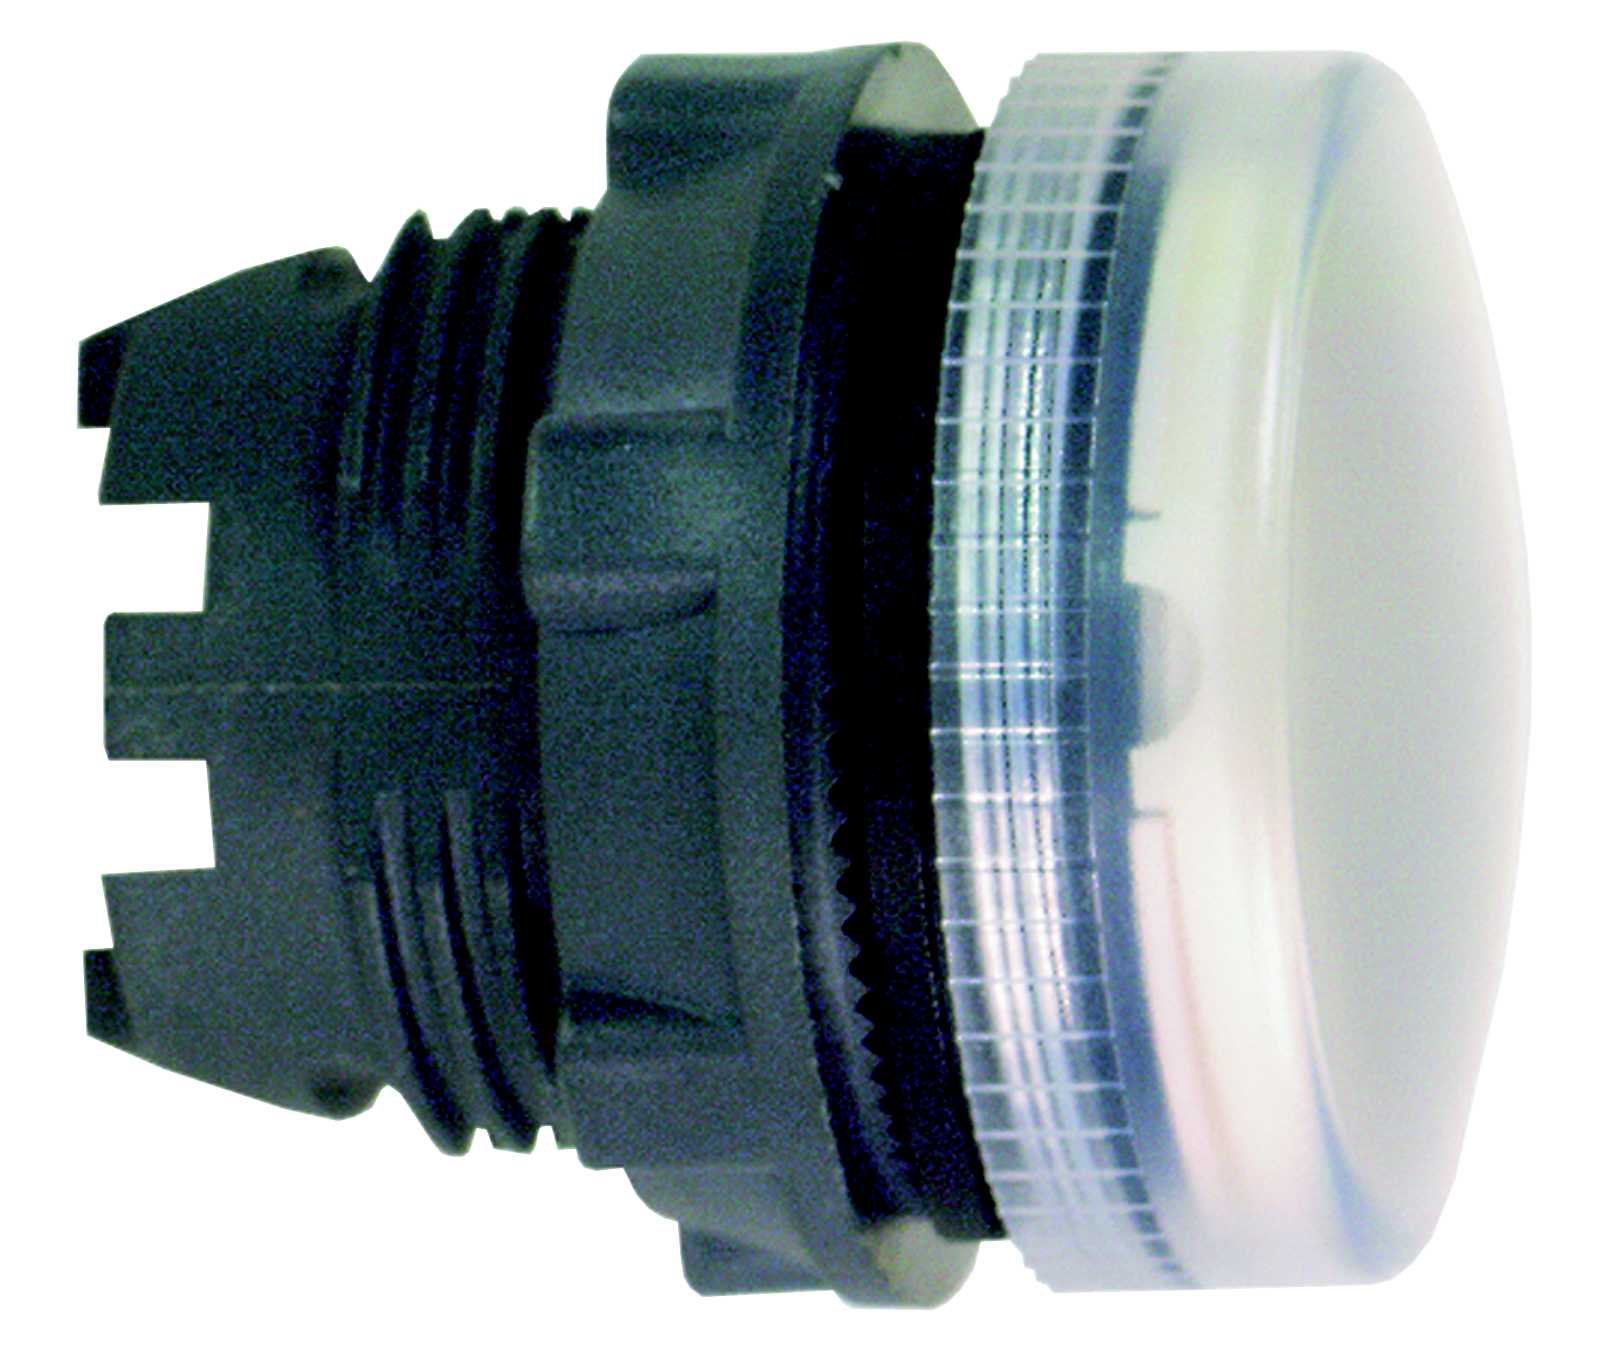 Schneider Electric - Signallampehode i plast for BA9s med linse i hvit farge